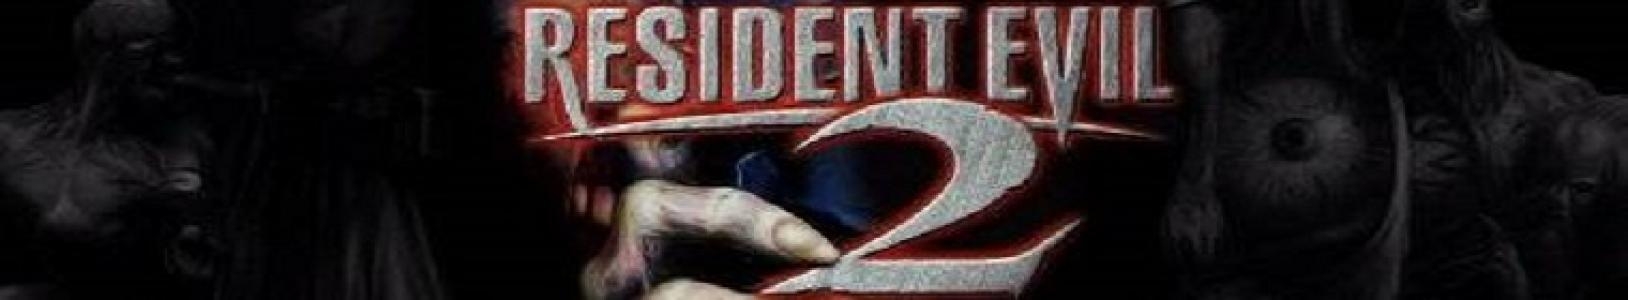 Resident Evil 2 banner